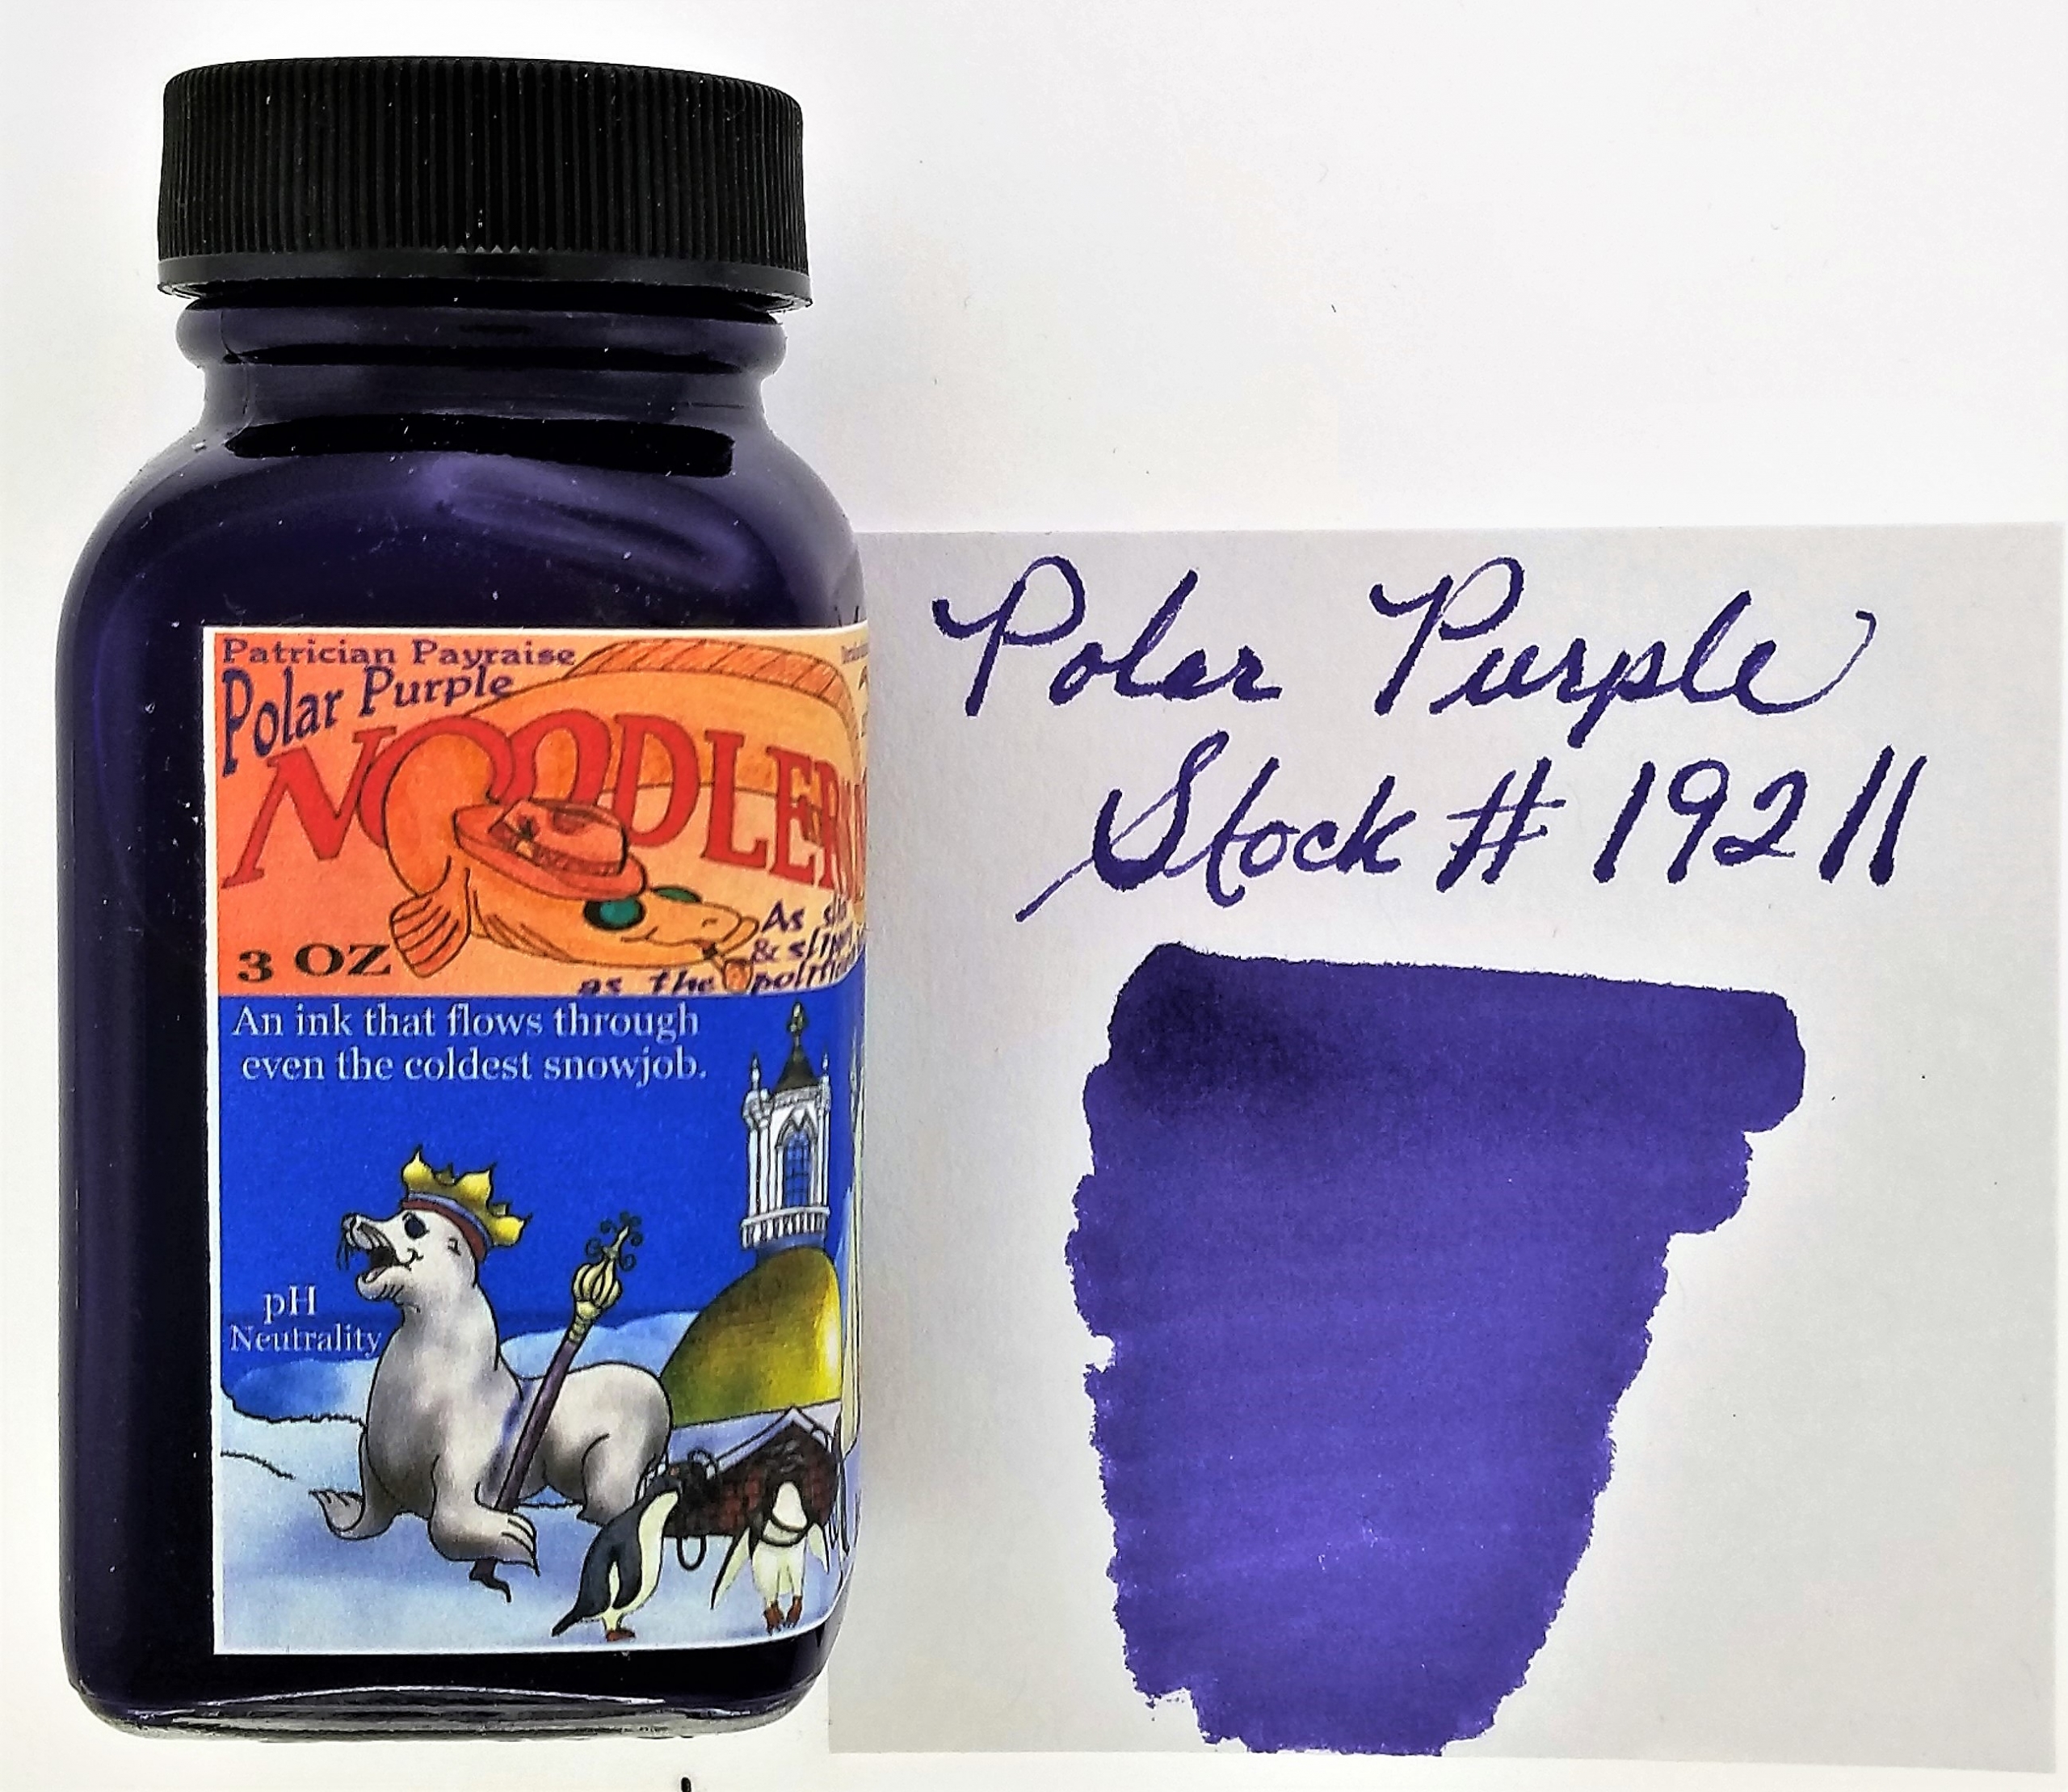 Noodler's Purple Ink - 3 oz Bottle